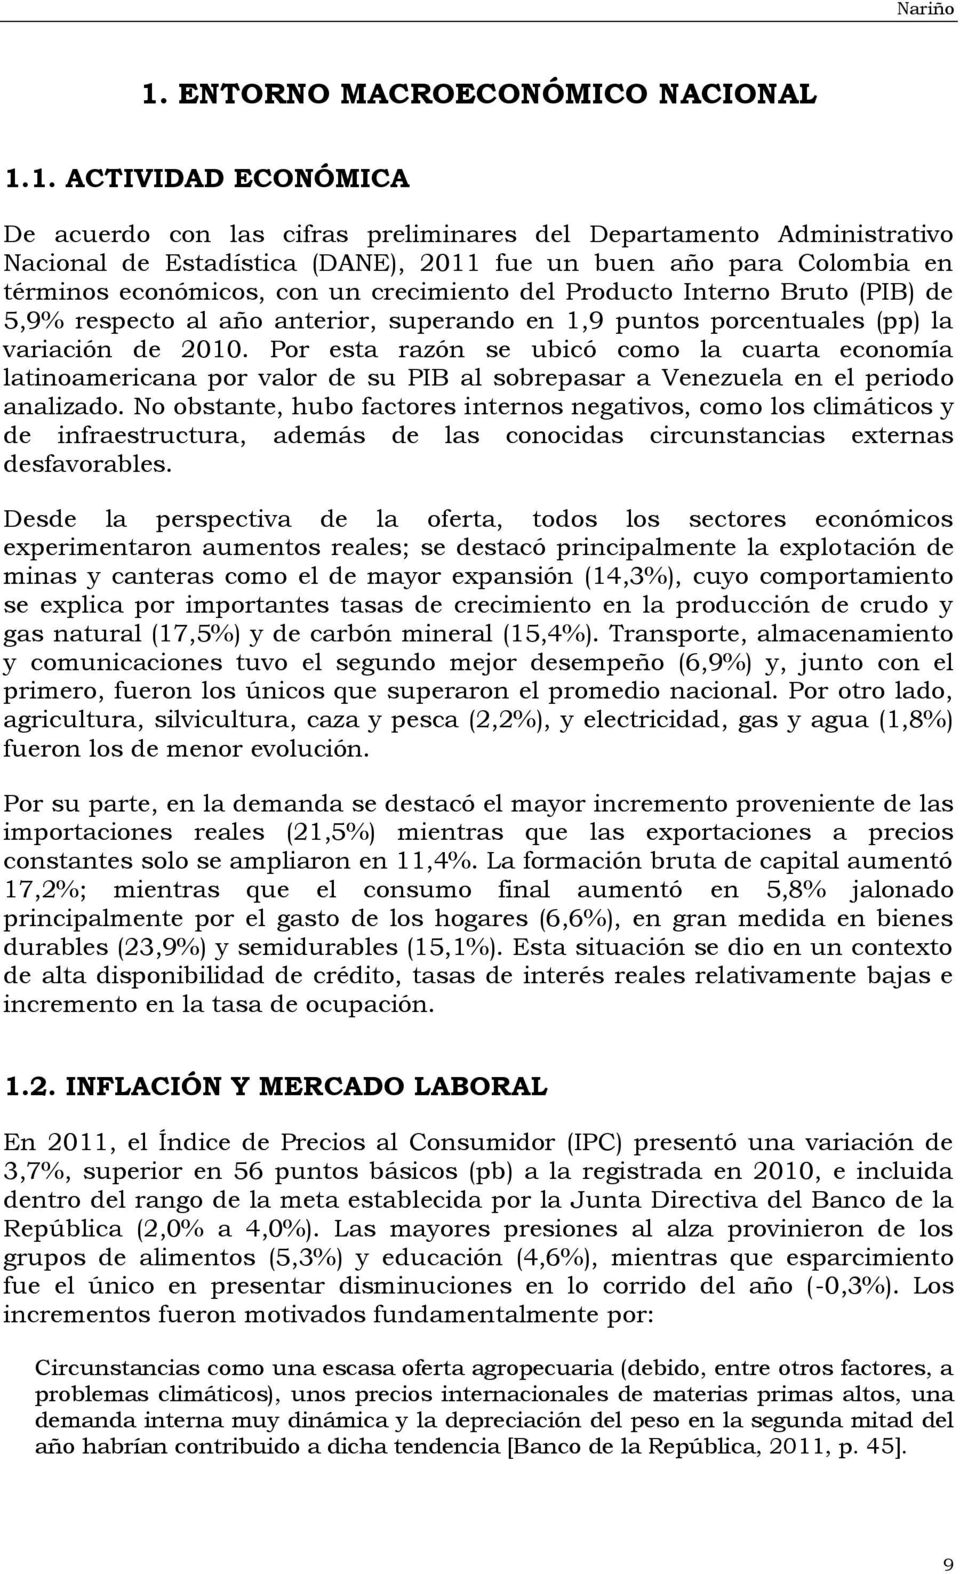 1. ACTIVIDAD ECONÓMICA De acuerdo con las cifras preliminares del Departamento Administrativo Nacional de Estadística (DANE), 2011 fue un buen año para Colombia en términos económicos, con un